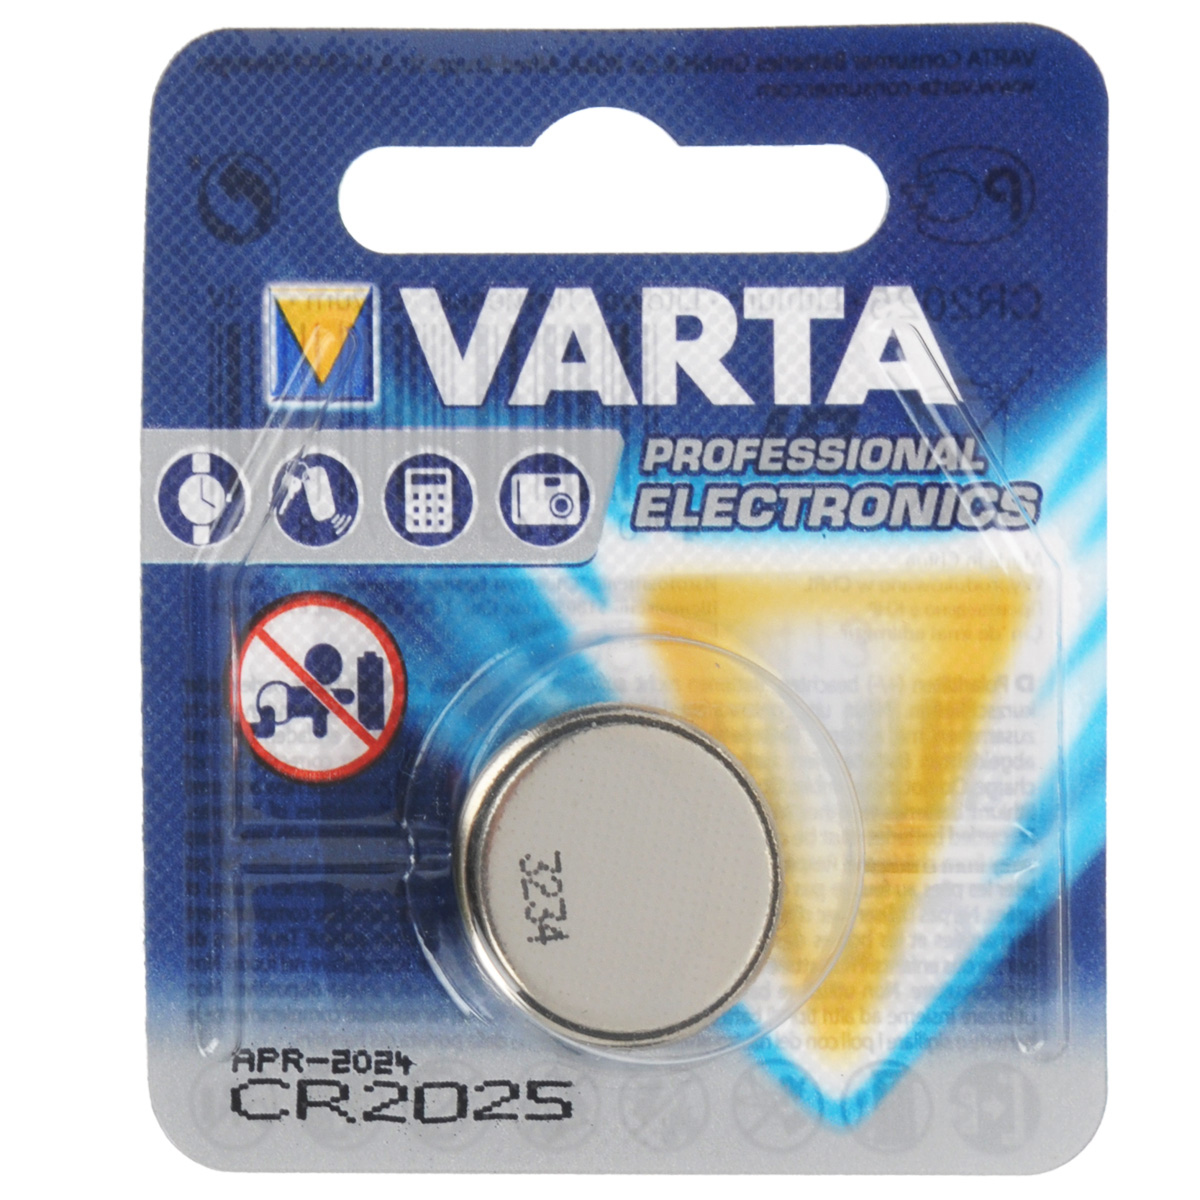 фото Батарейка Varta "Professional Electronics", тип CR2025, 3В, 1 шт